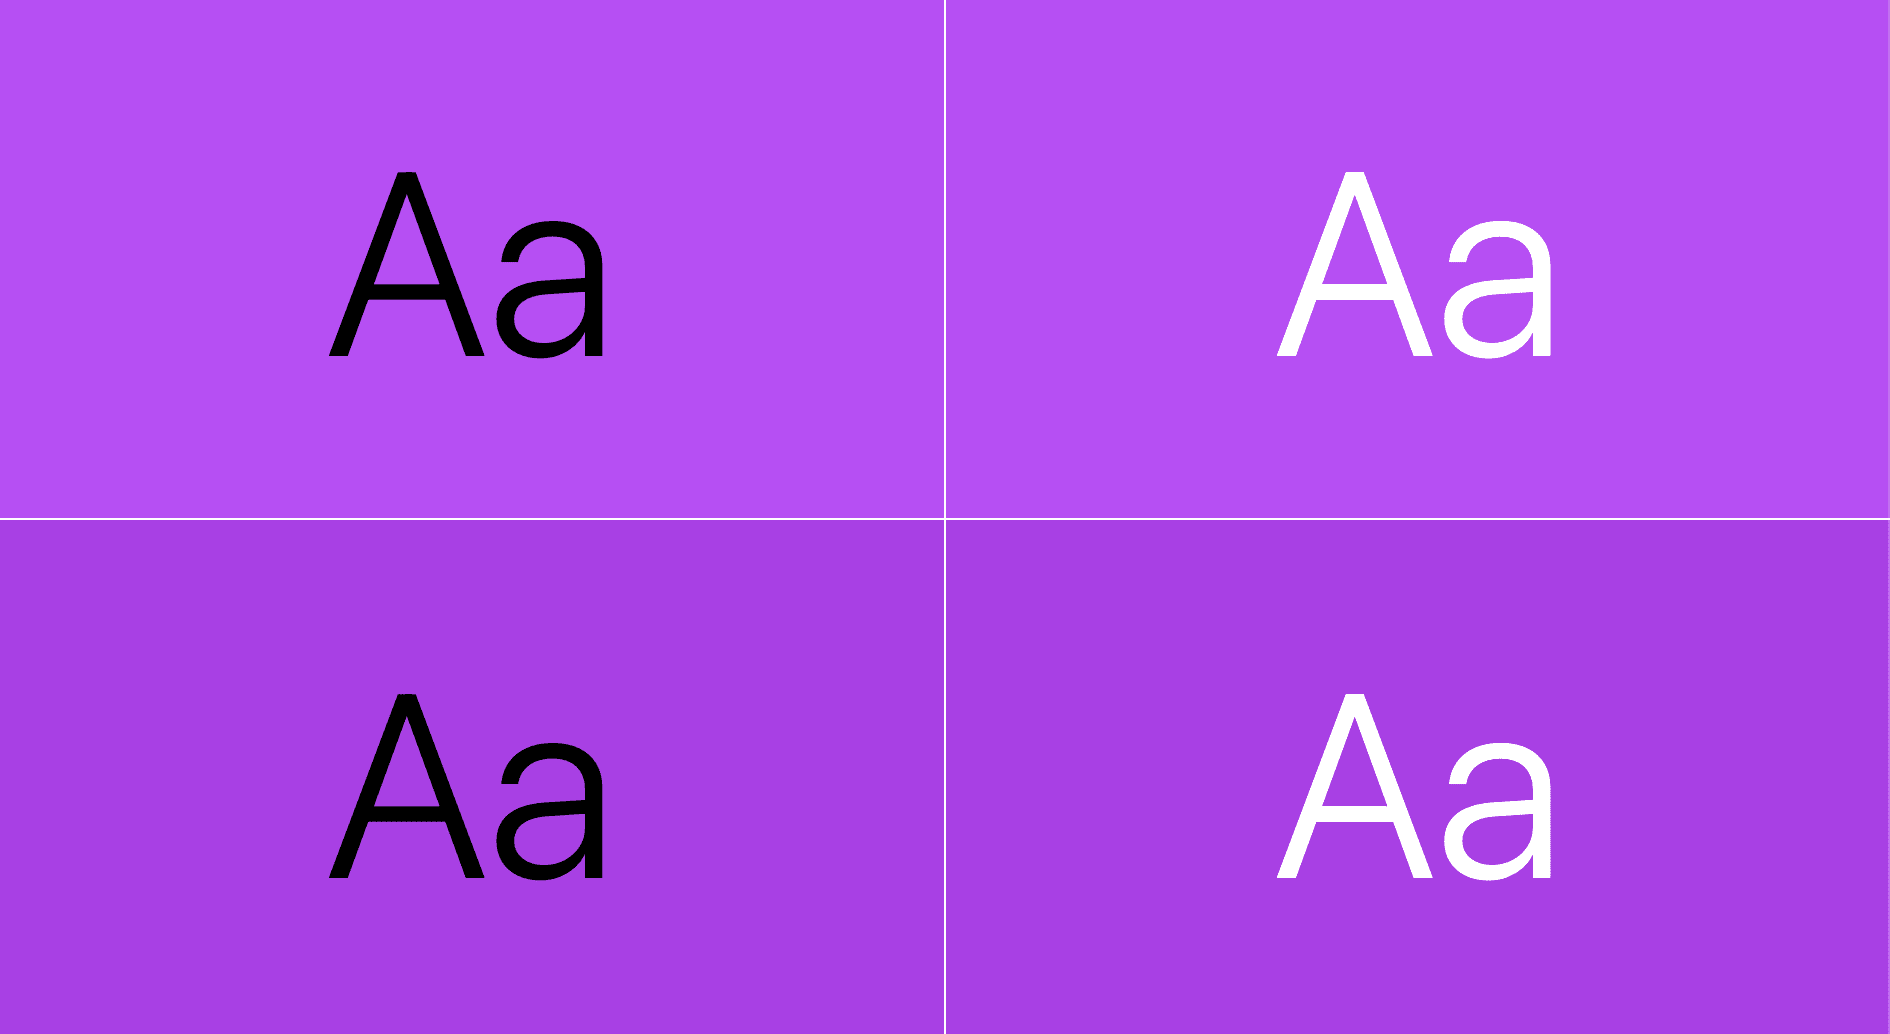 הטקסט מוצג מעל סגול: התאמה אחת היא טקסט בשחור מעל סגול והשניה טקסט לבן מעל סגול.